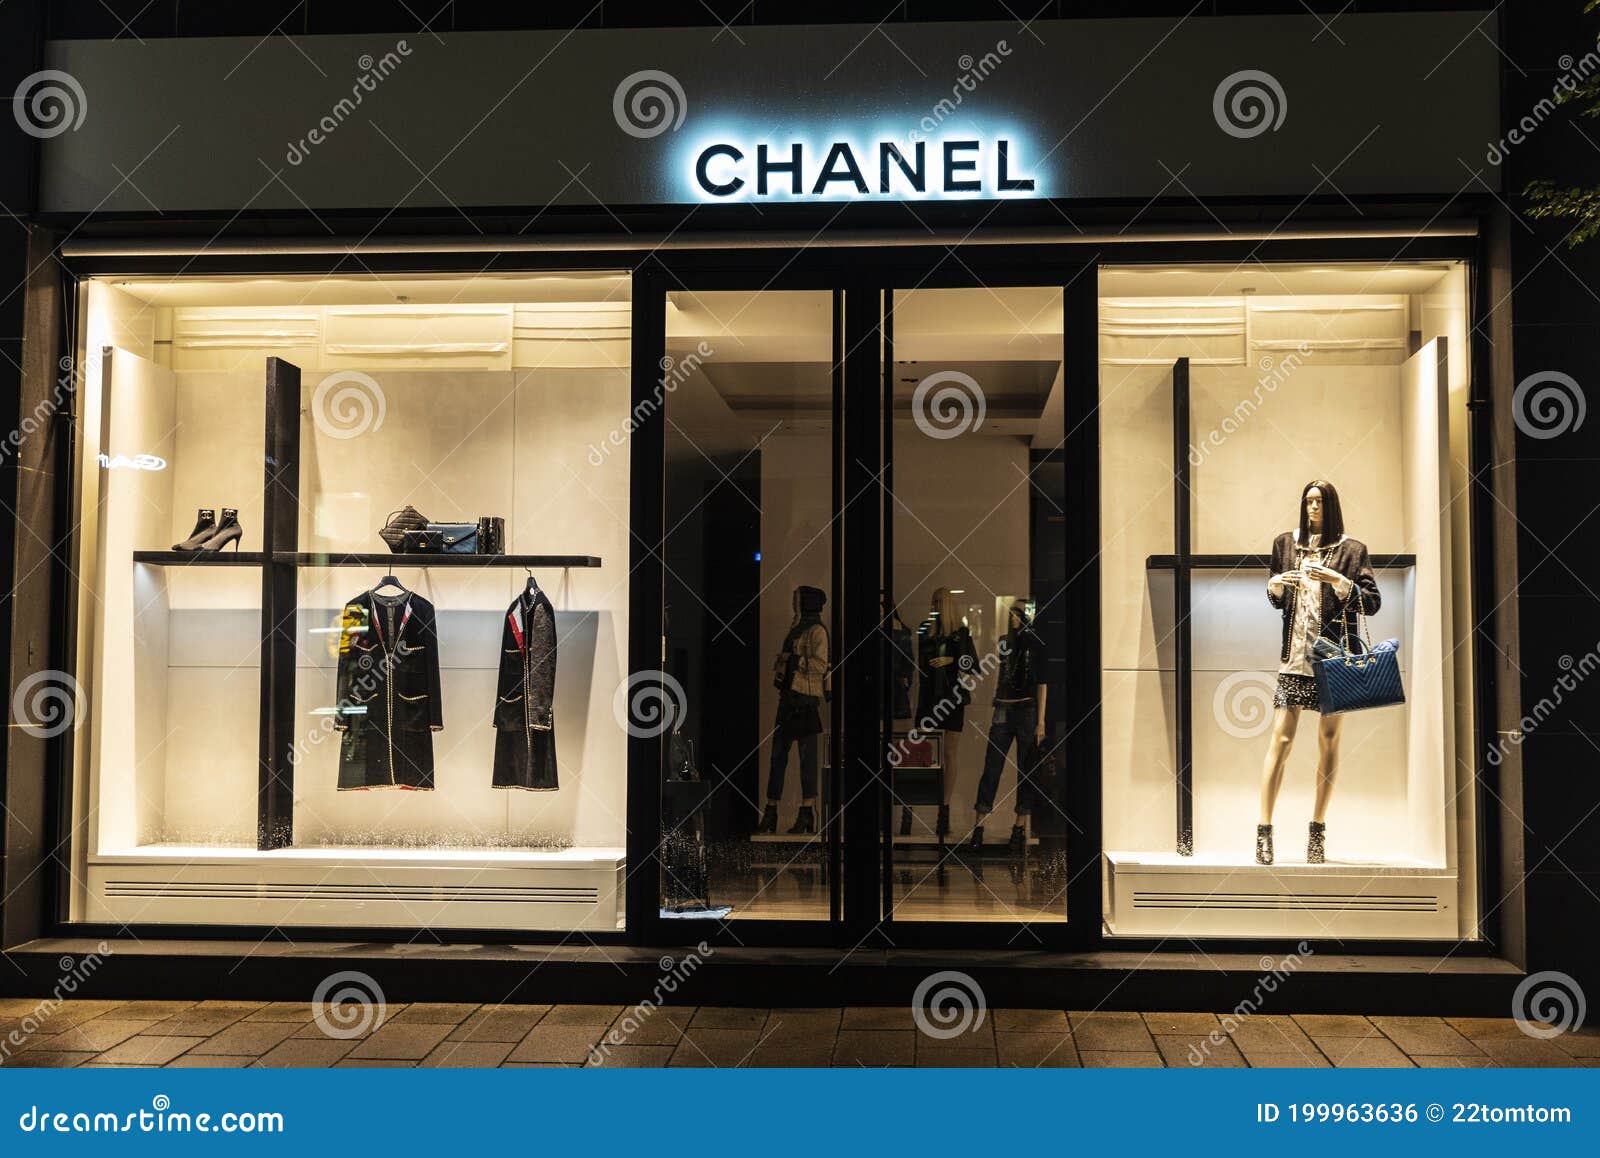 Magasin Vêtements De Luxe Chanel La Nuit à Hambourg, Photo éditorial - Image du hambourg, 199963636